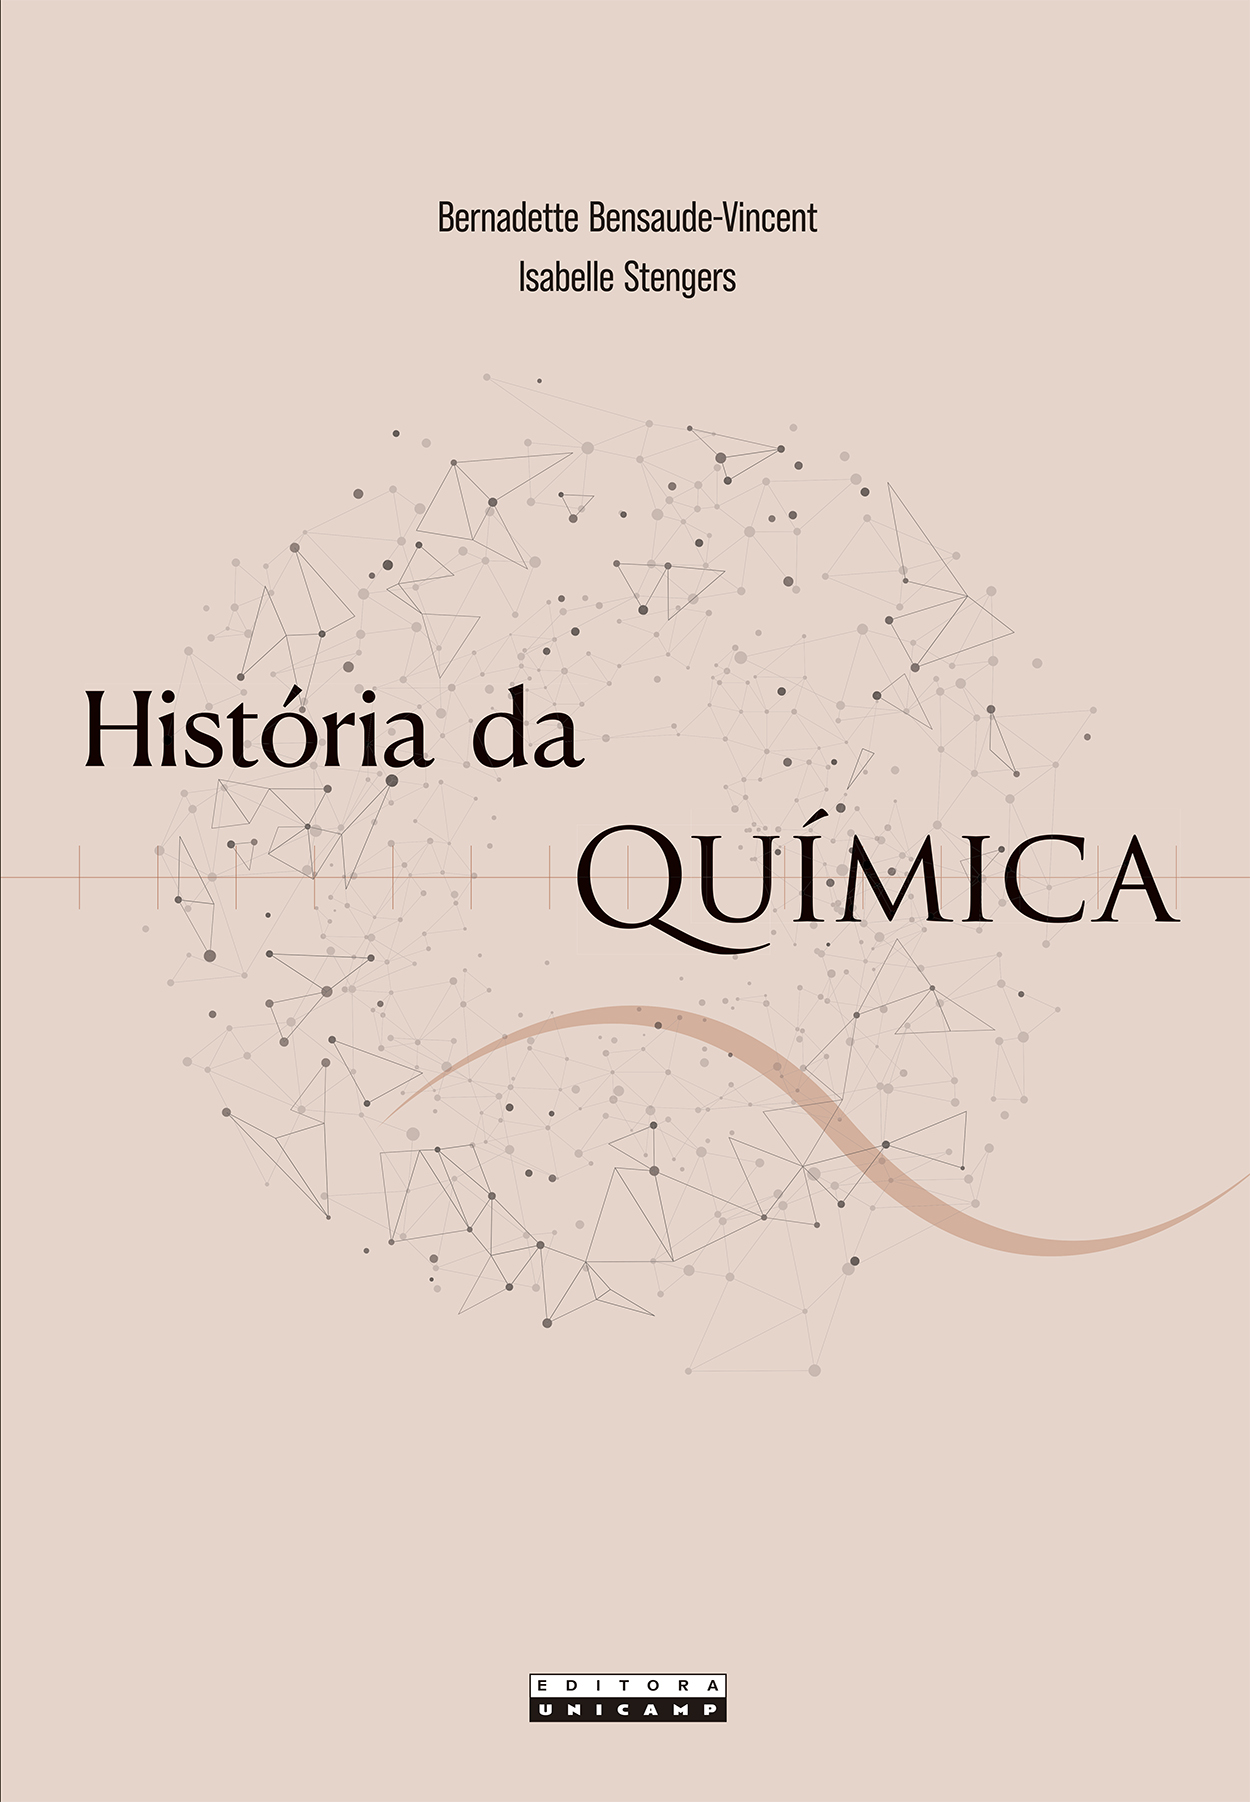 PDF) BIENAIS DE SÃO PAULO: ARQUIVO, MEMÓRIA E ESQUECIMENTO